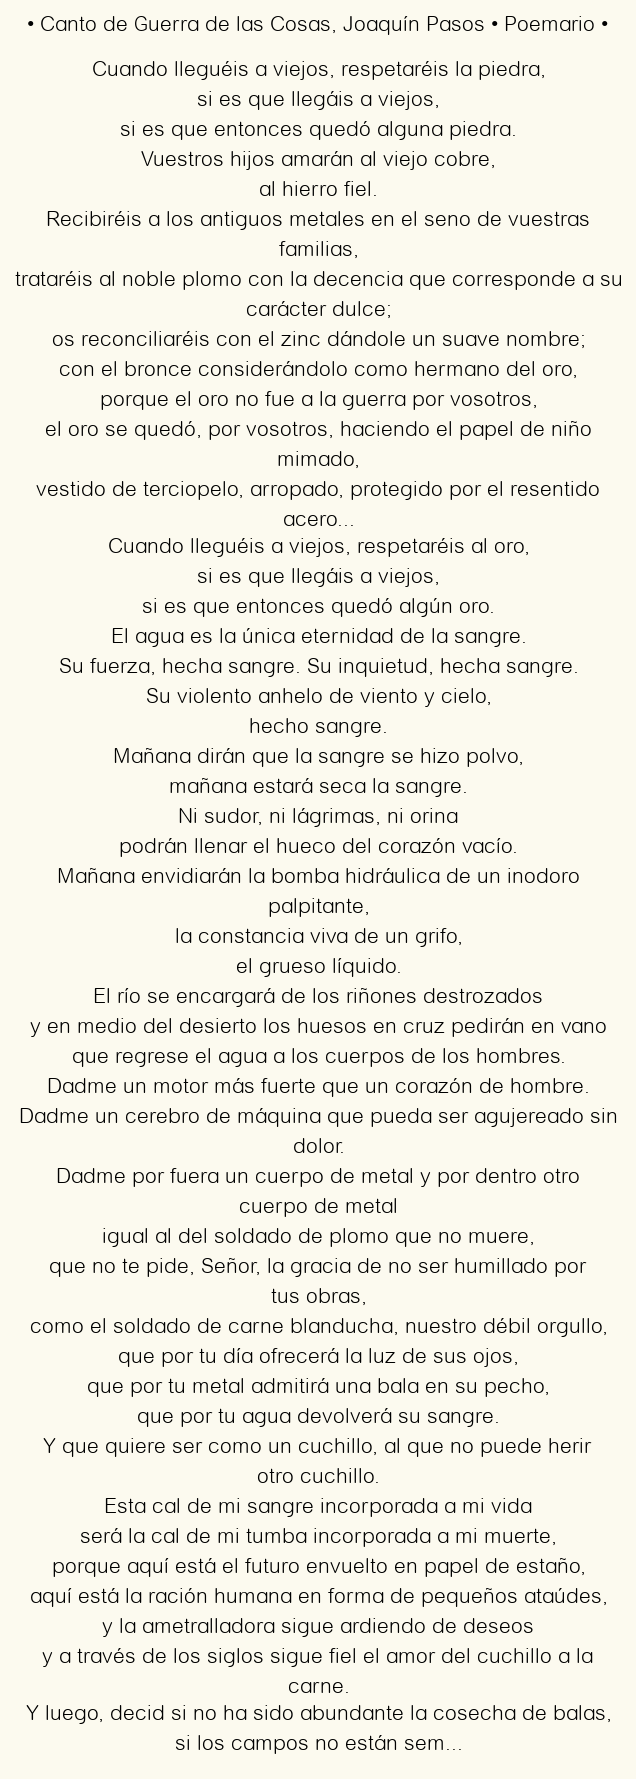 Imagen con el poema Canto de Guerra de las Cosas, por Joaquín Pasos